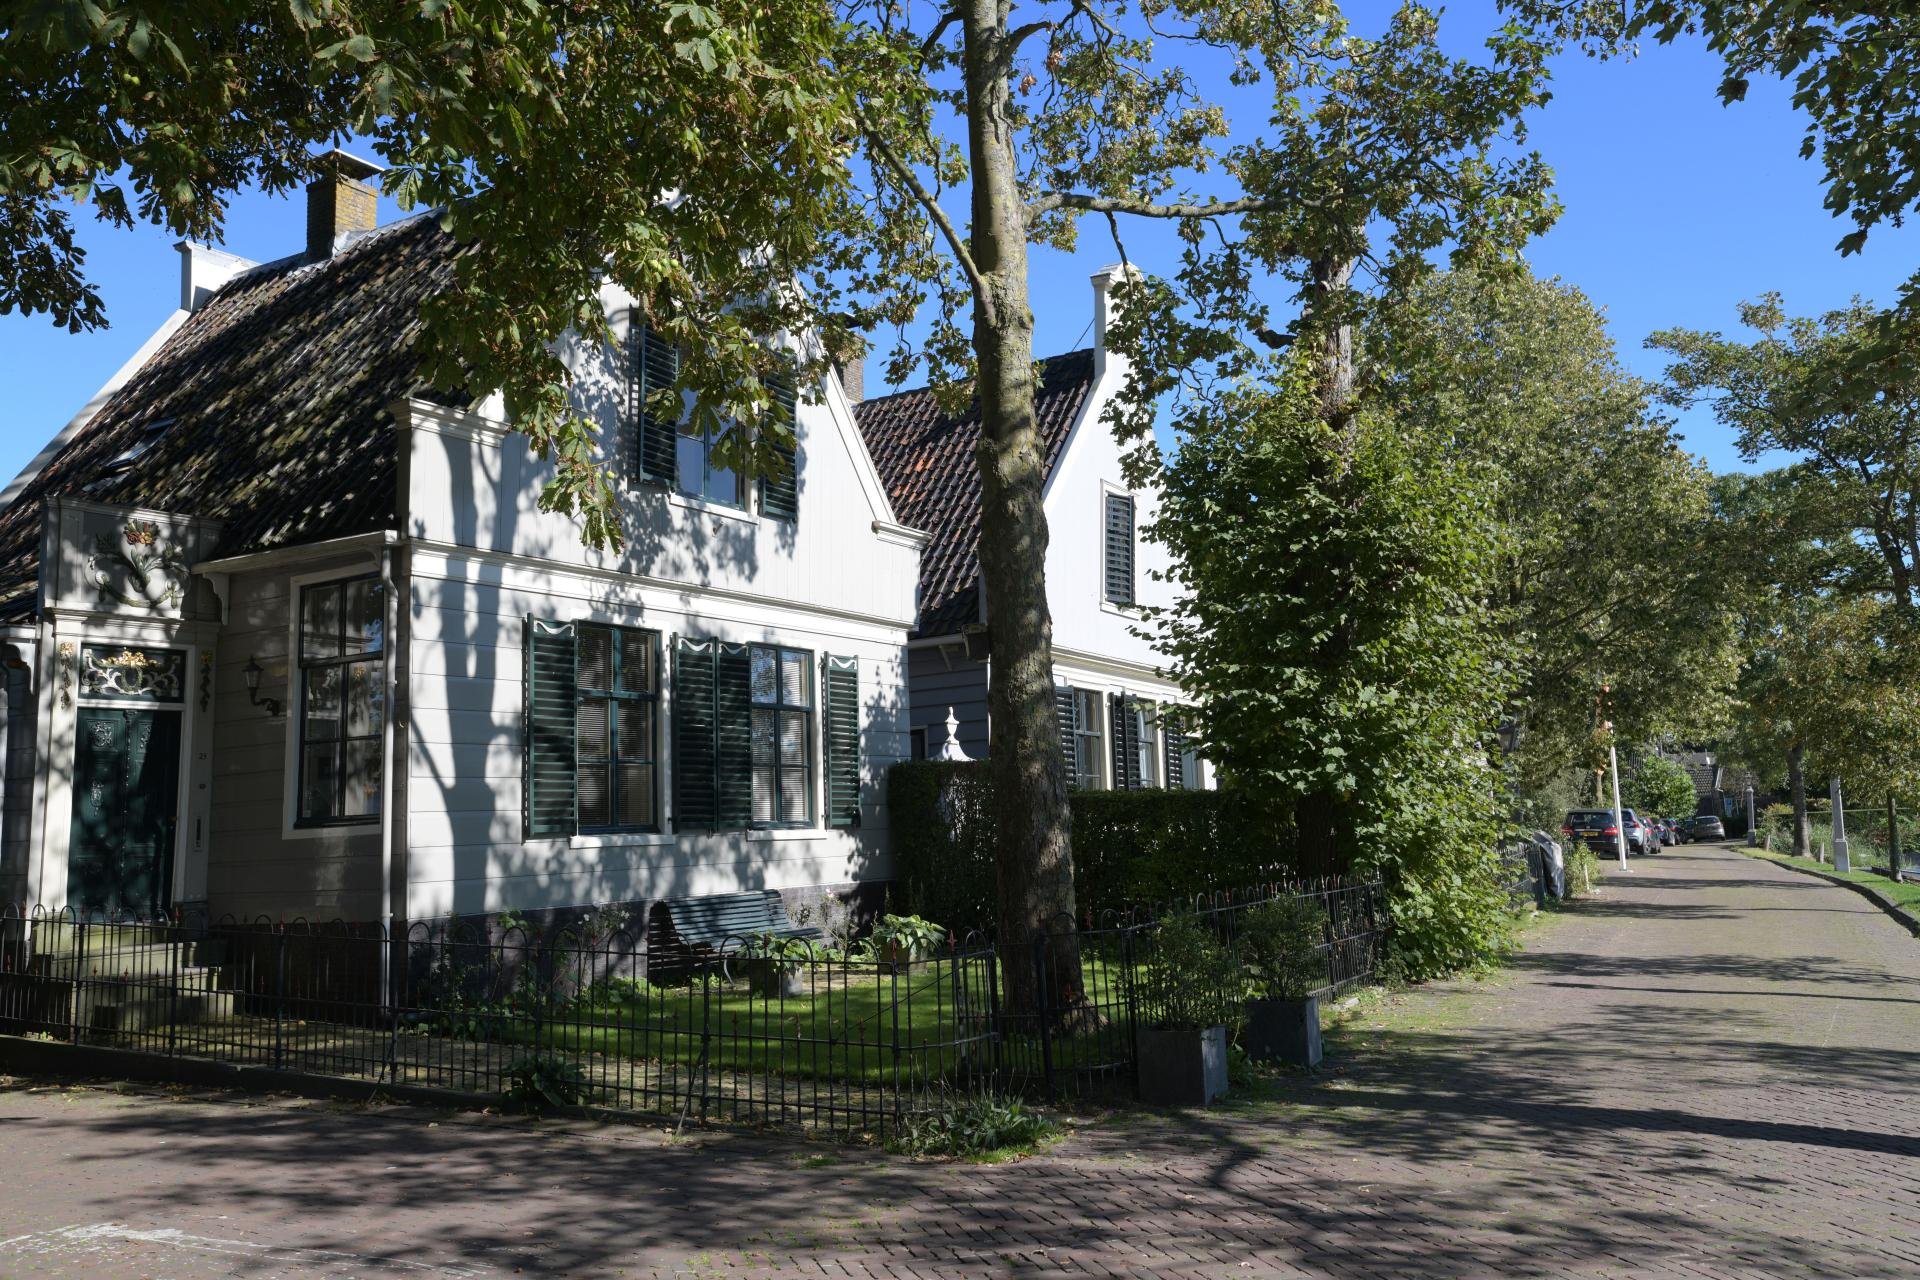 Houten huizen aan het Havenrak in Broek in Waterland